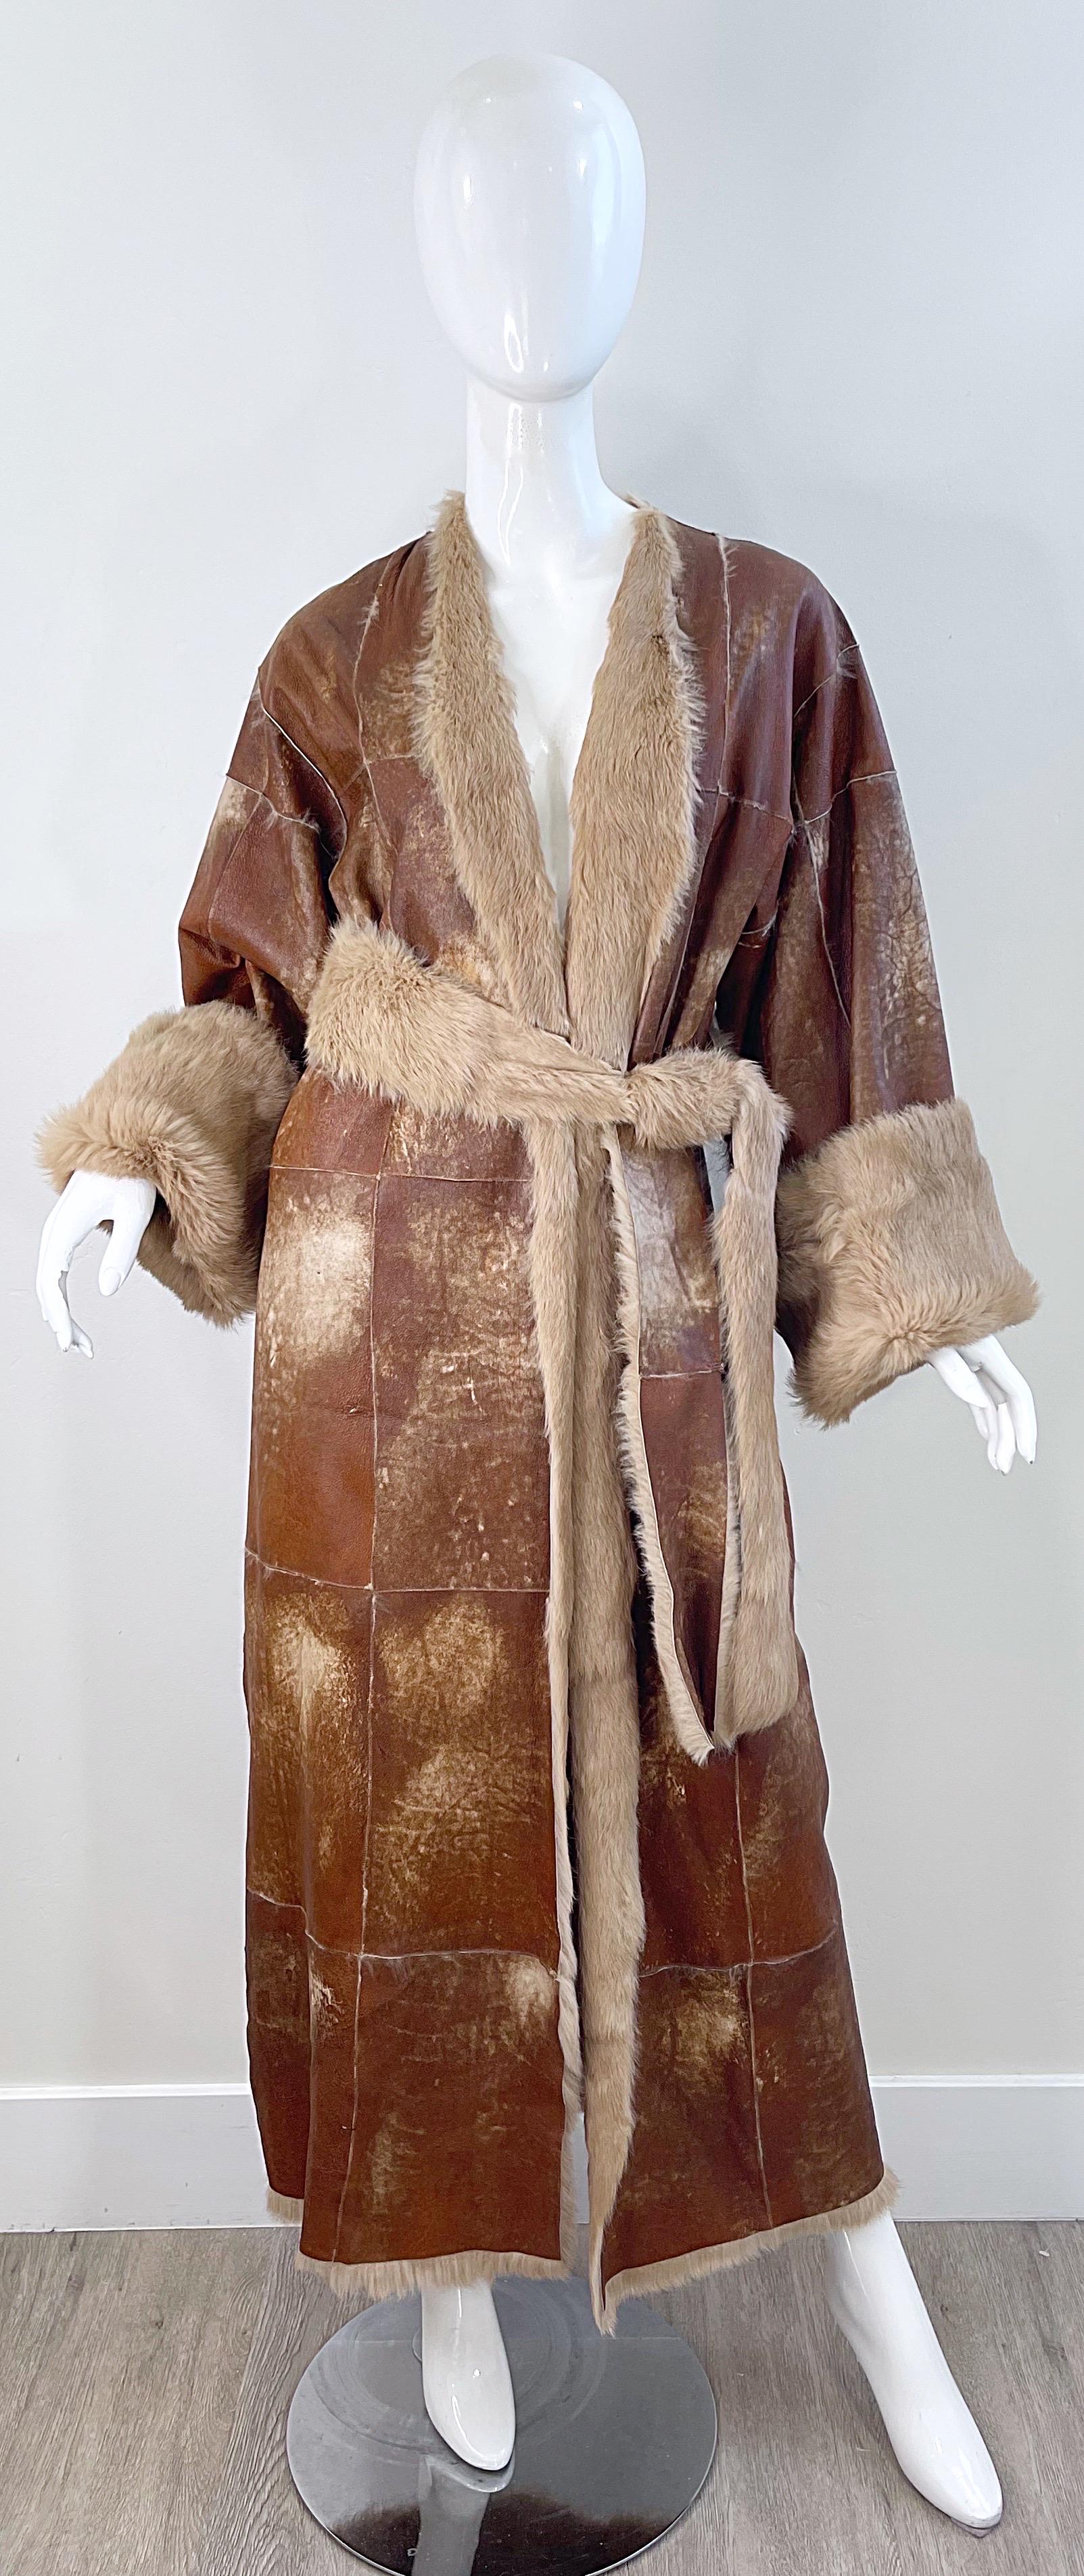 Schicker ADRIENNE LANDAU Mantel aus braunem Leder und Kaninchenfell aus den späten 90ern! Das weichste und plüschigste Fell kleidet diese seltene Schönheit vollständig aus. Die perfekte neutrale Jacke für den ganzen Winter. Der dazu passende Gürtel